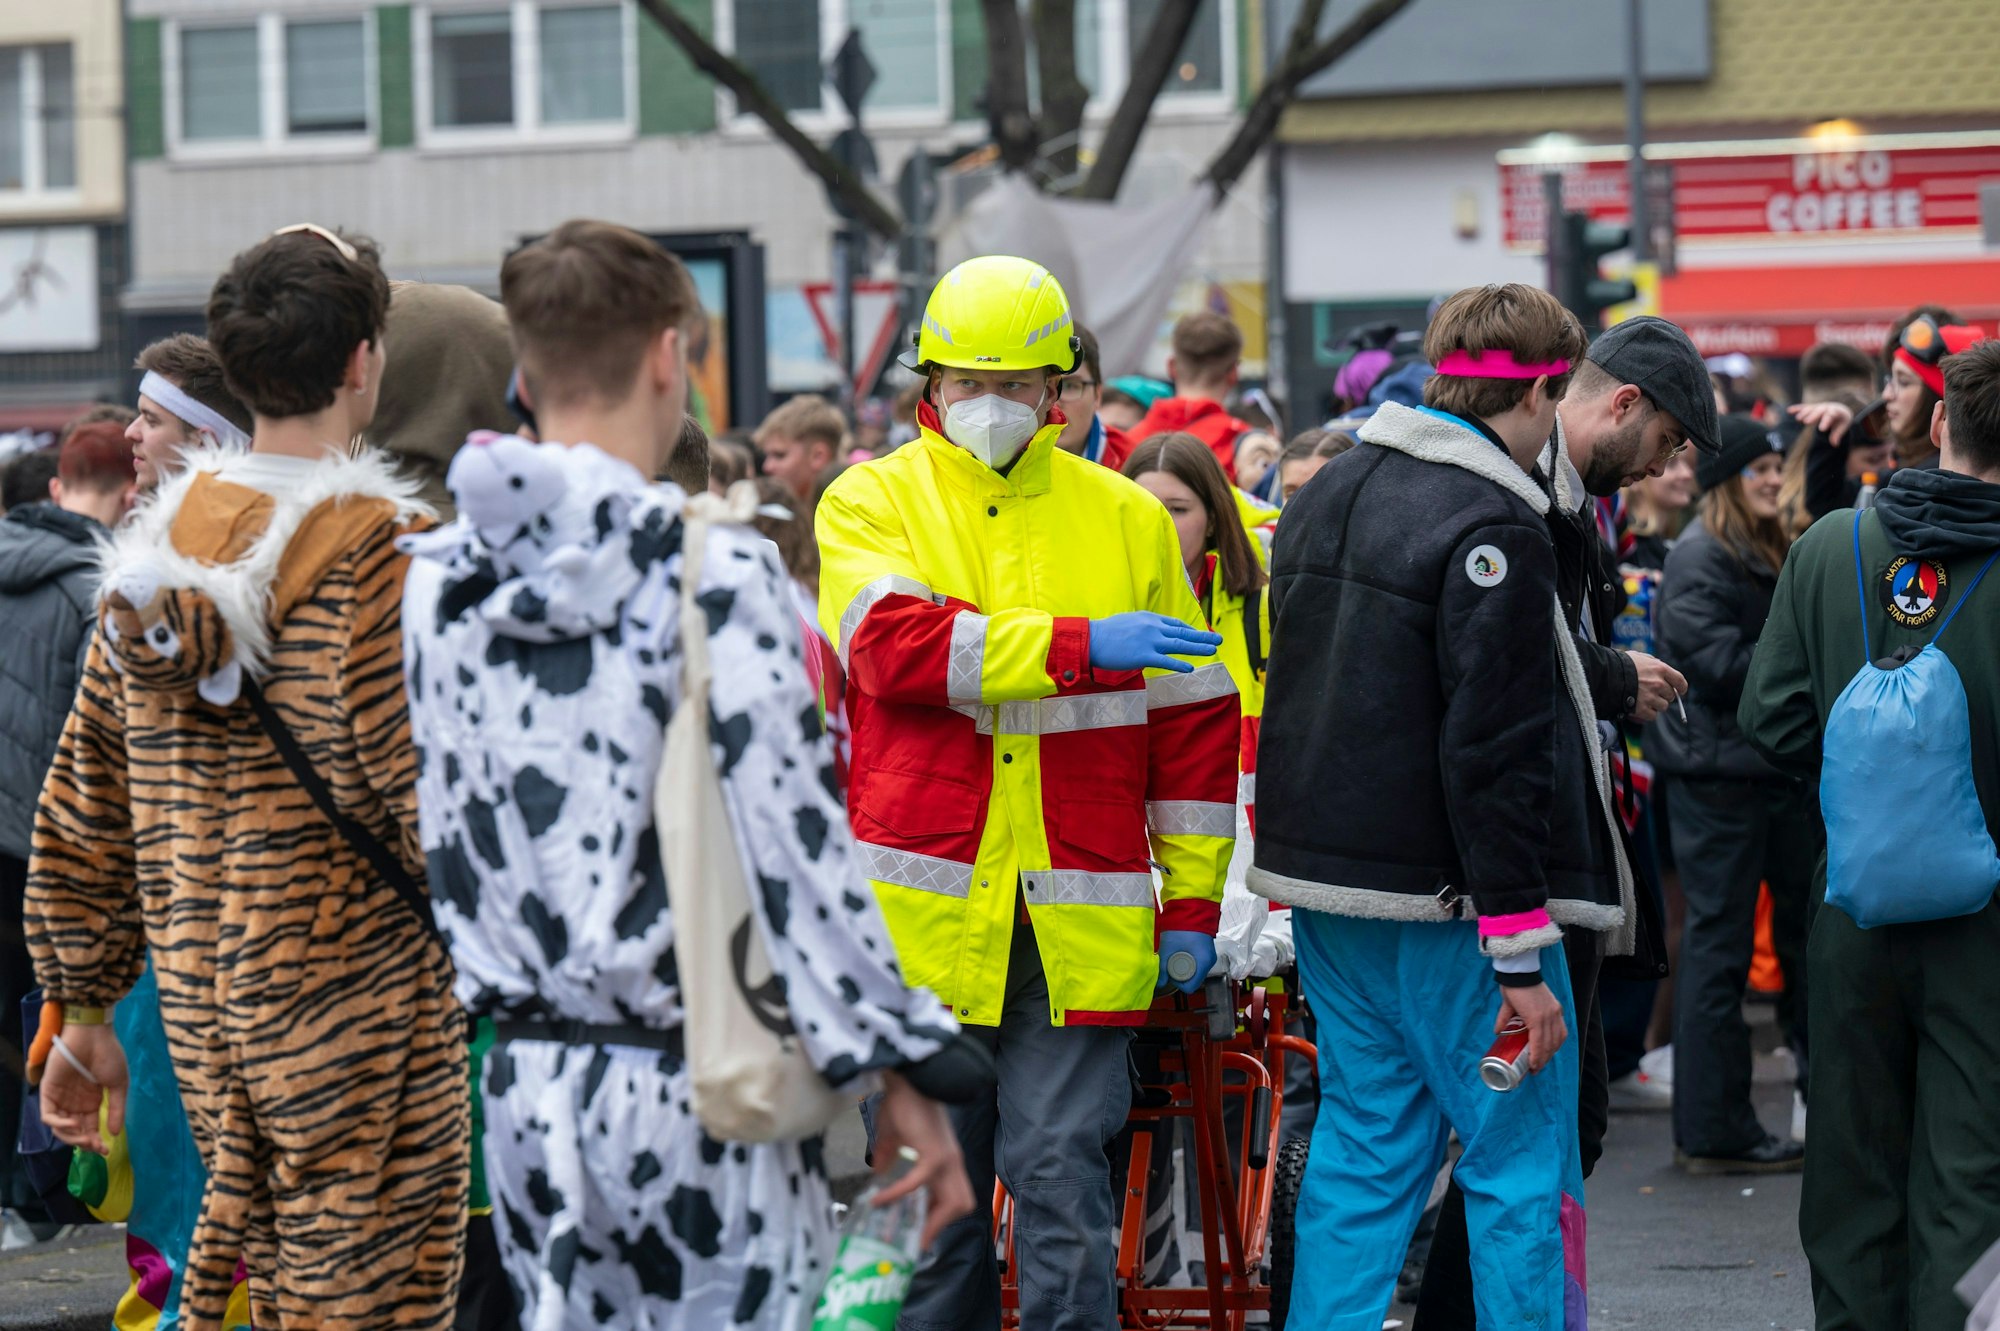 Ein Sanitäter in Warnbekleidung dirigiert einen Trupp durch die Menschenmenge auf der Straße.